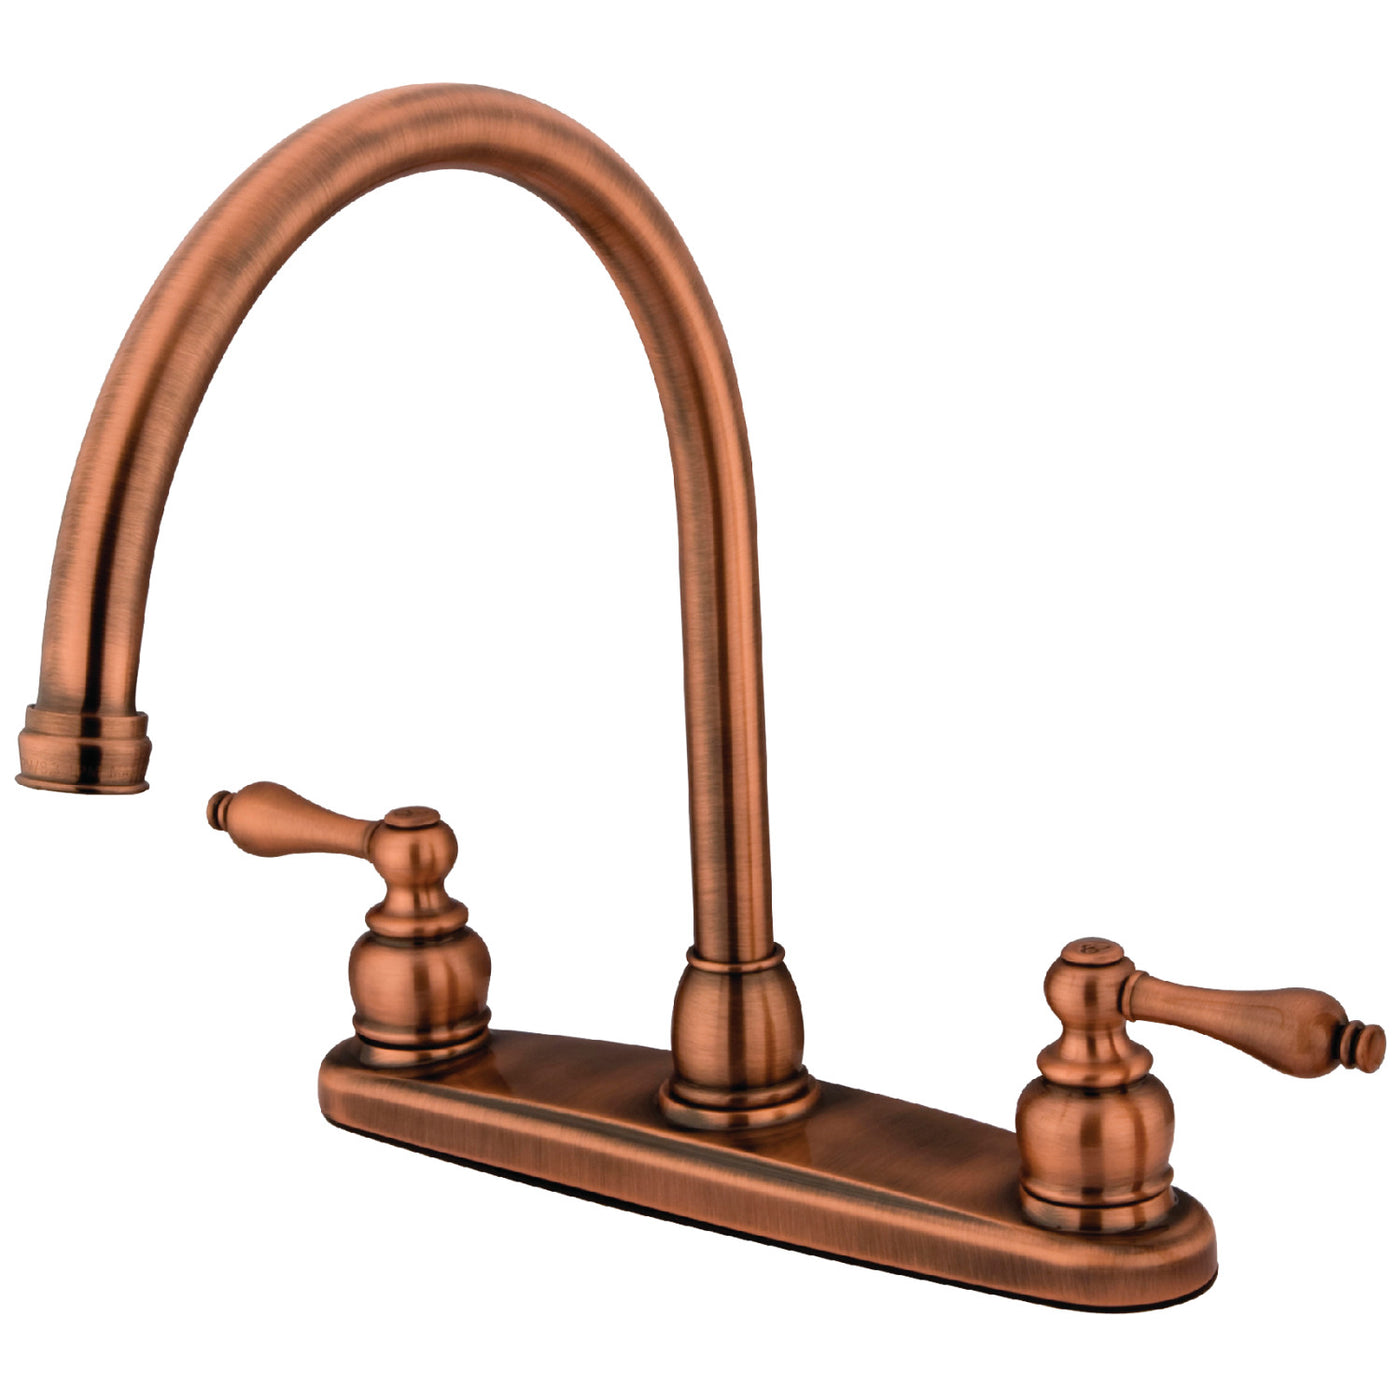 Elements of Design EB726ALLS 8-Inch Centerset Kitchen Faucet, Antique Copper